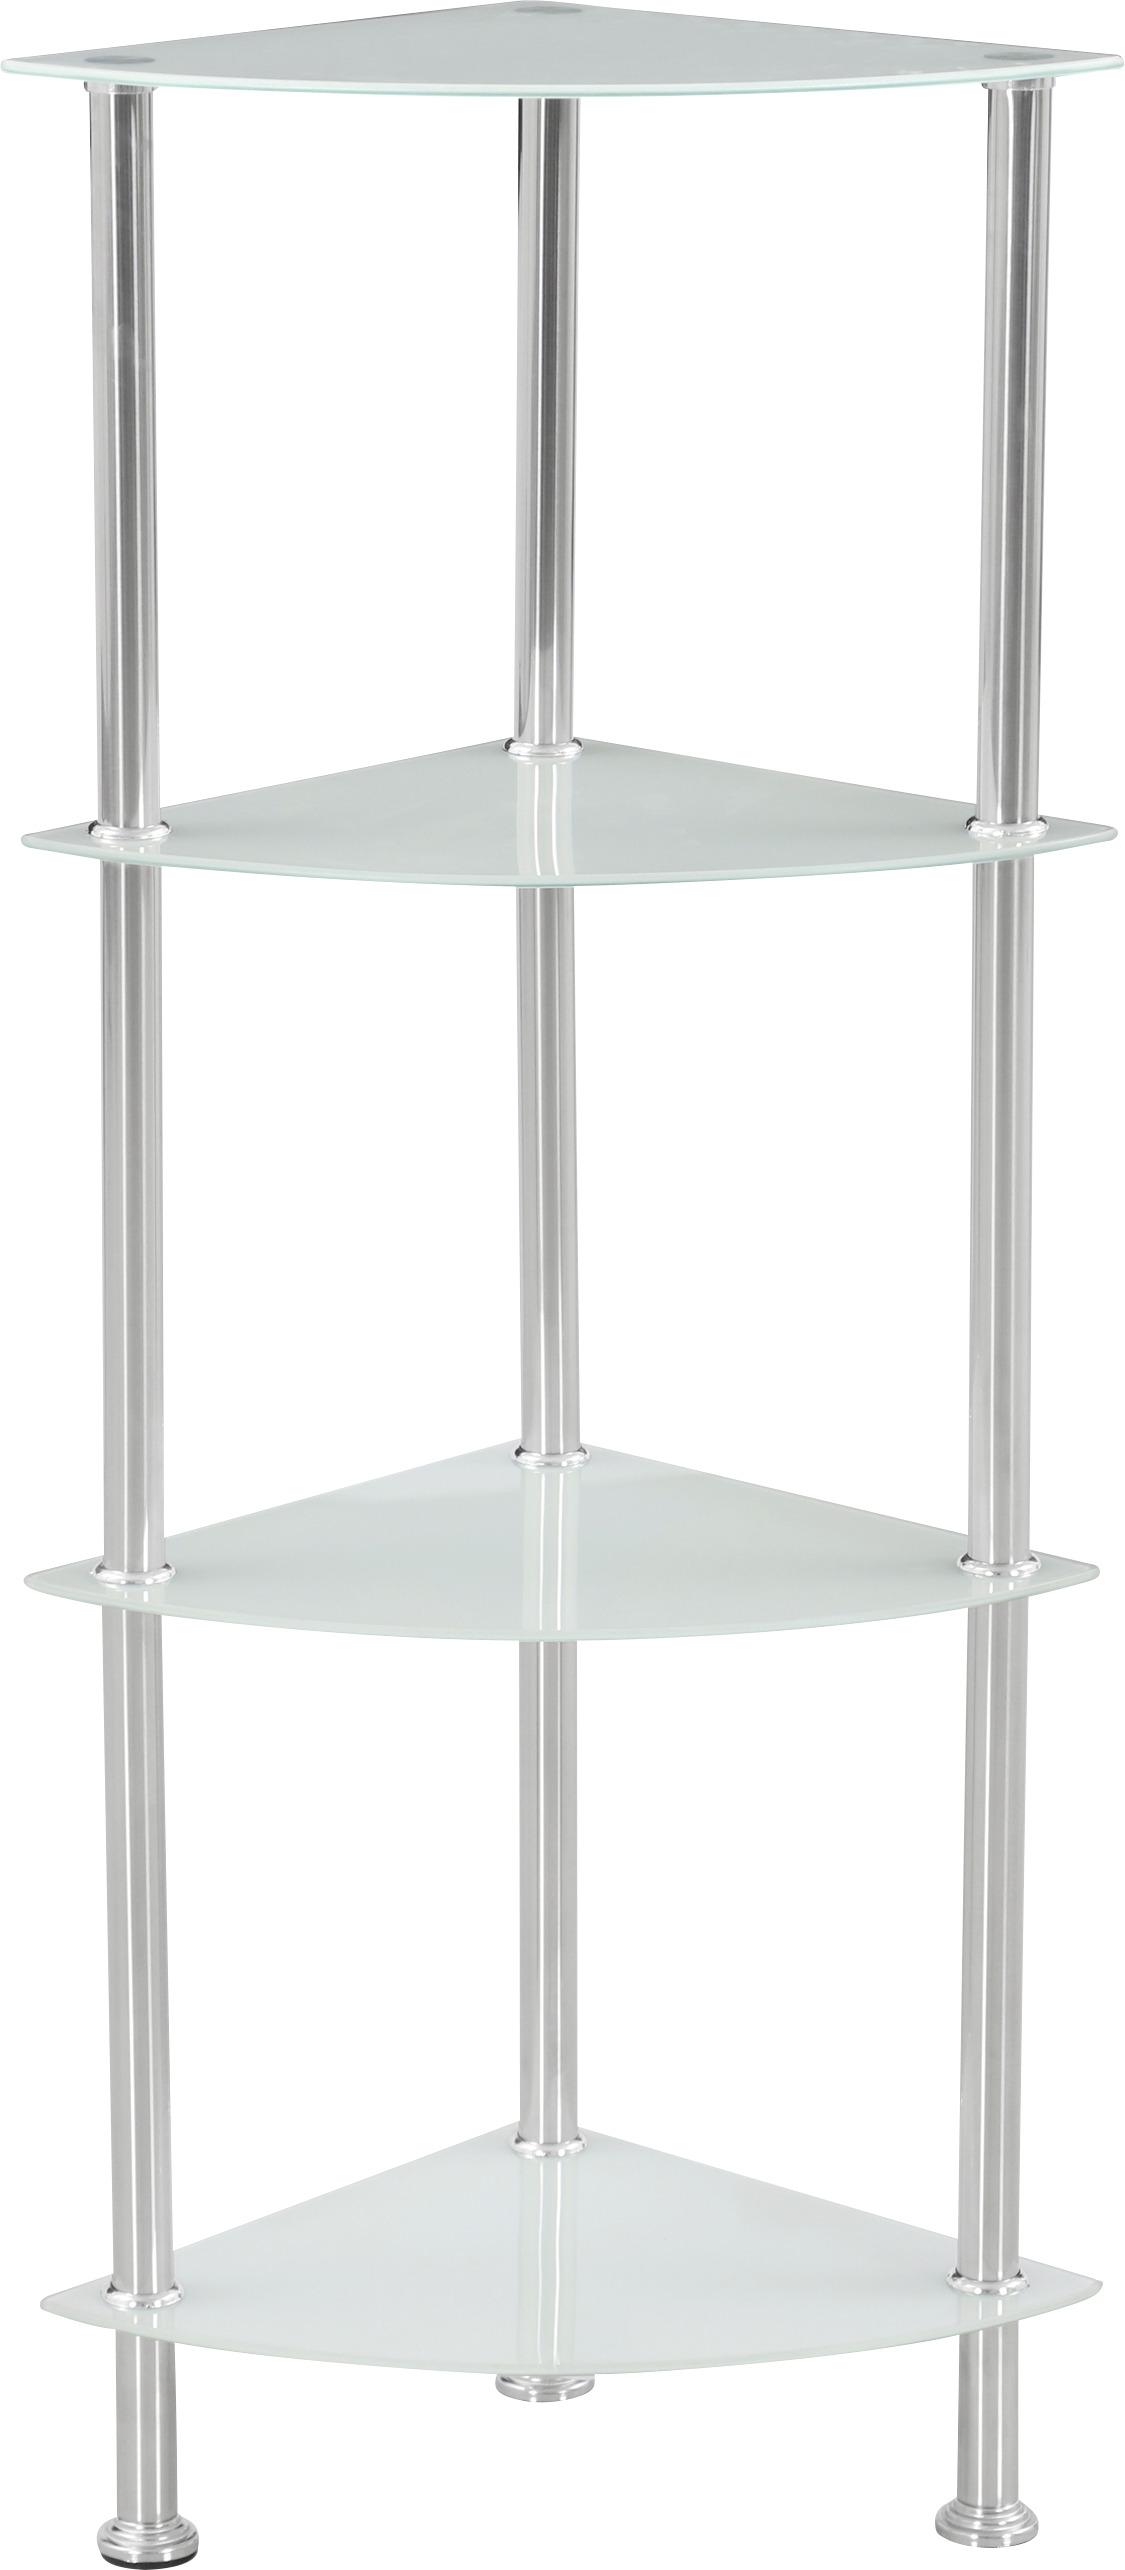 Eckregal mit Glasfächern Glare B 30cm, Edelstahl/Weiß - Edelstahlfarben/Weiß, MODERN, Glas/Metall (30/99/30cm) - Luca Bessoni